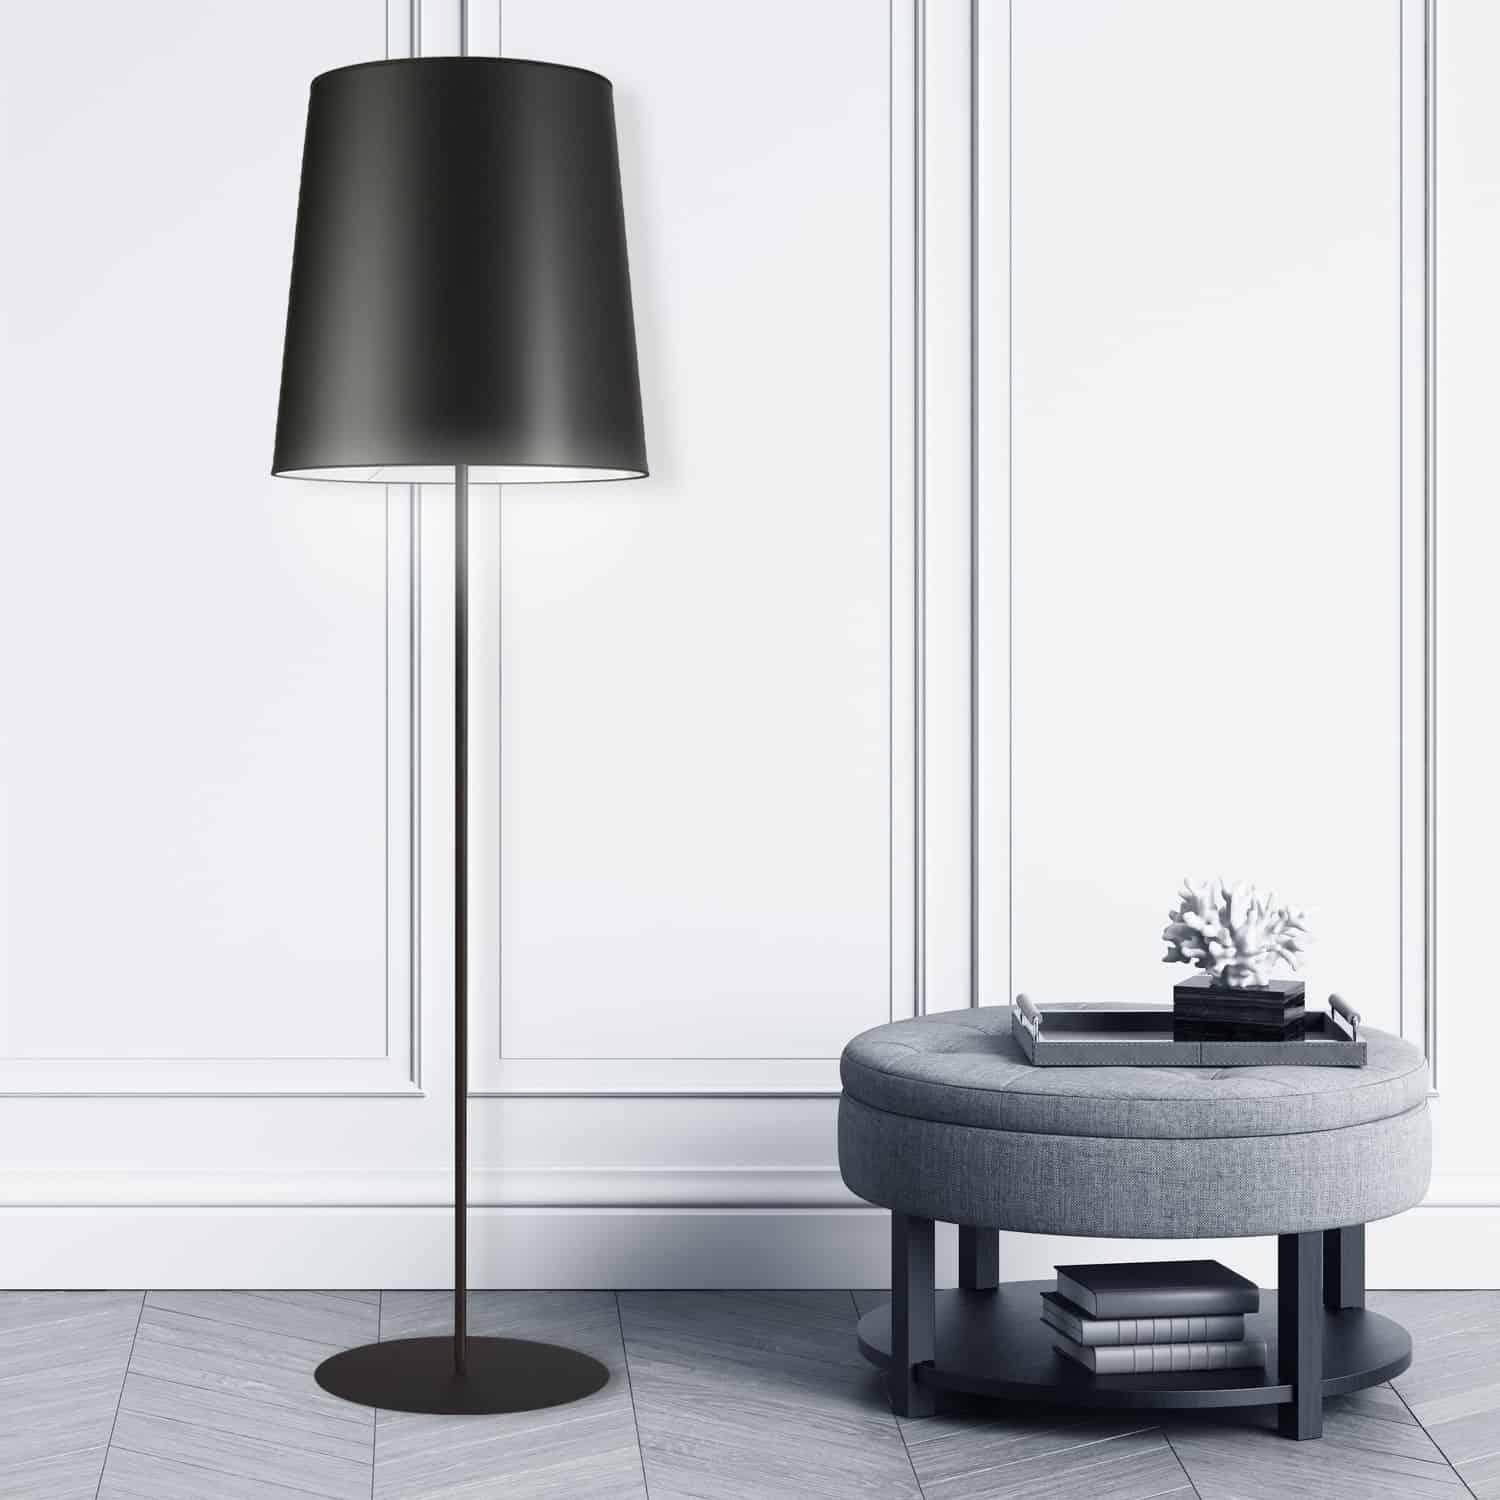 Dainolite - Floor Lamp (Decorative) - Lights Canada